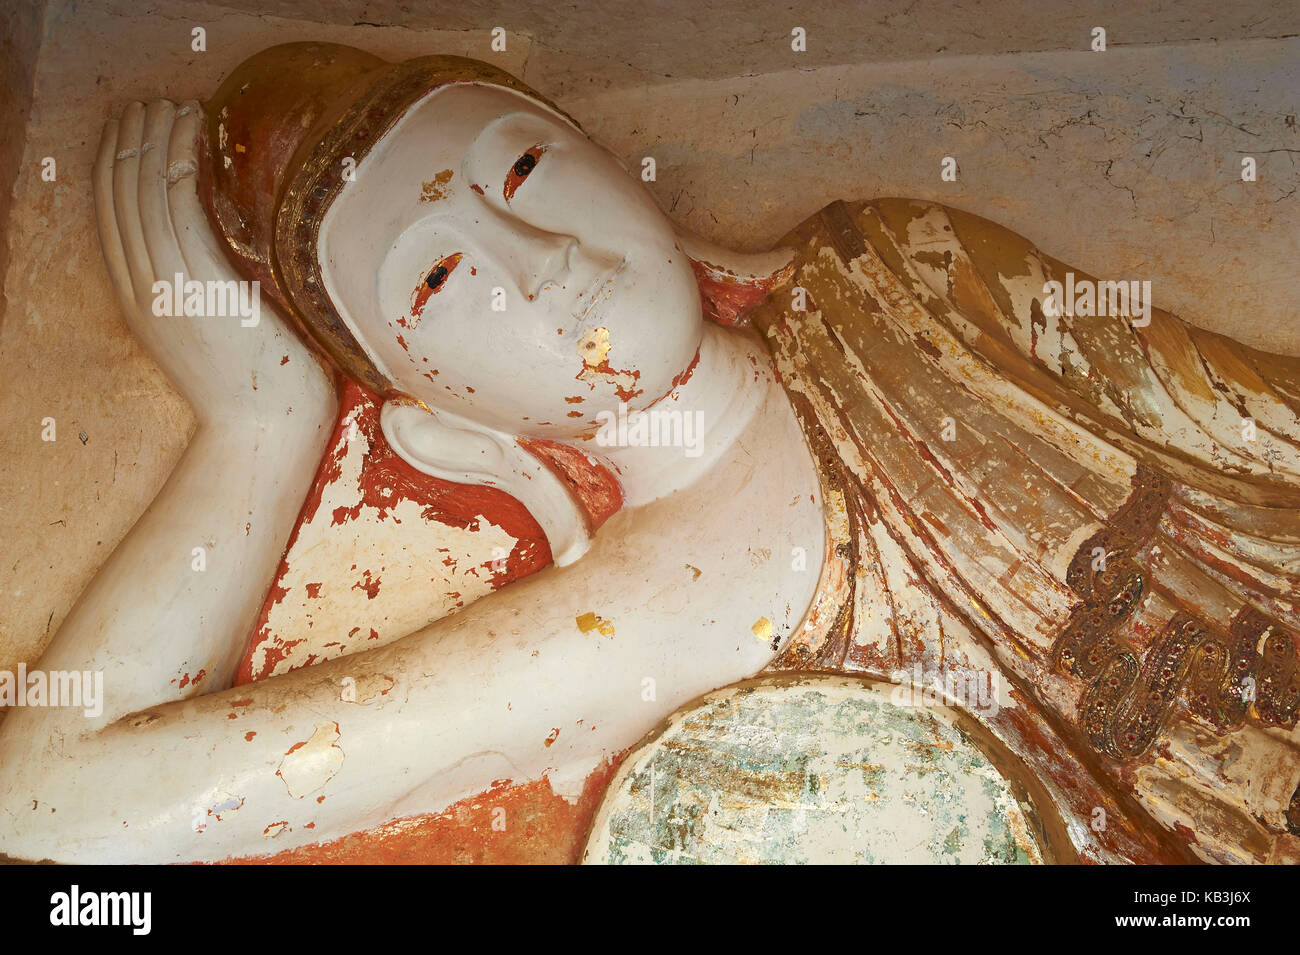 Statue de Bouddha du 15ème siècle, le Myanmar, l'Asie, Banque D'Images